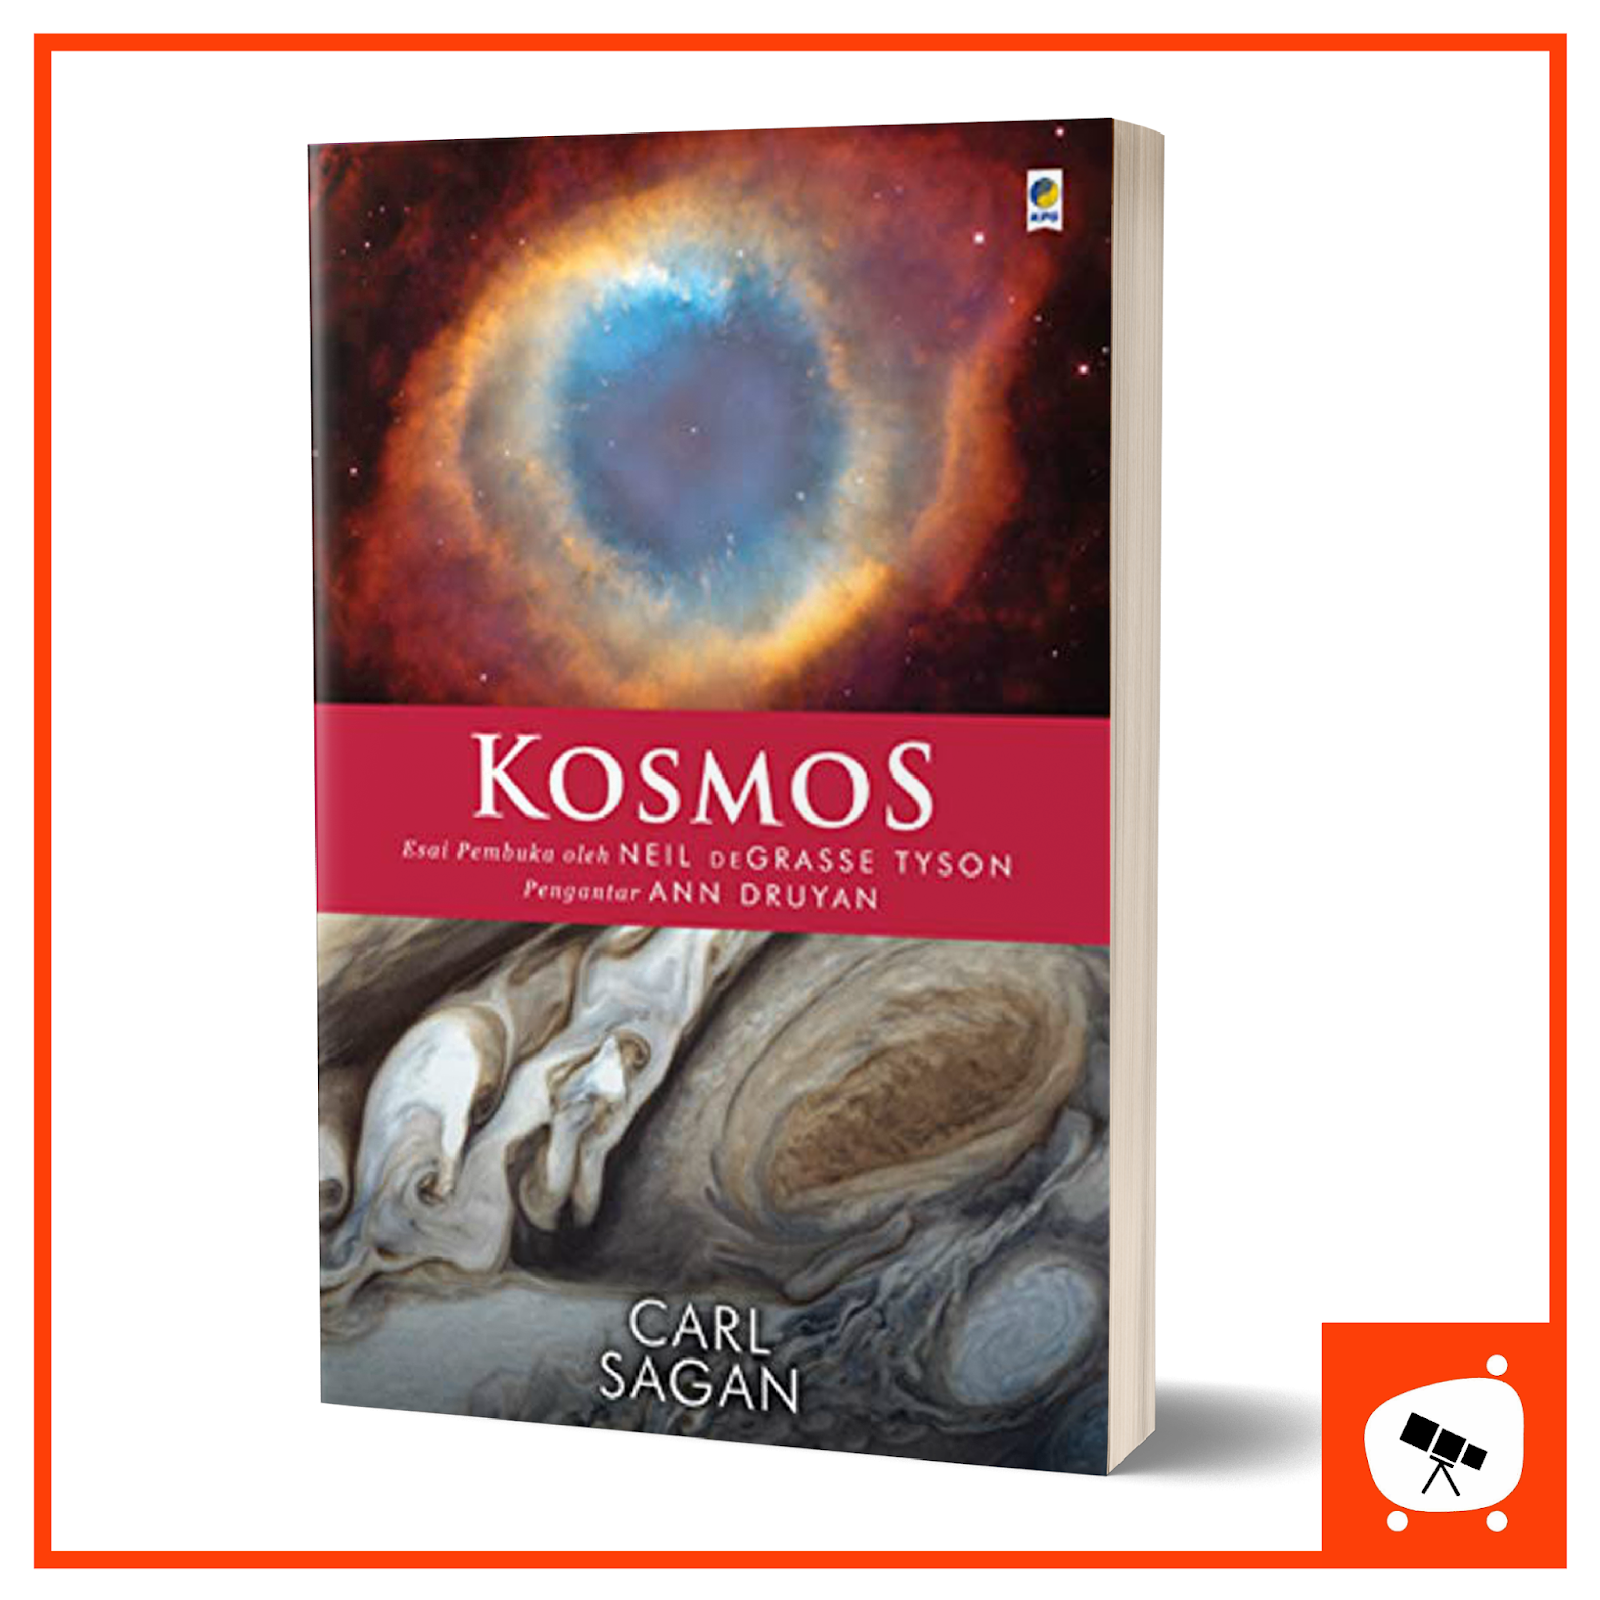 Buku Tentang Astronomi Terbaik - KibrisPDR